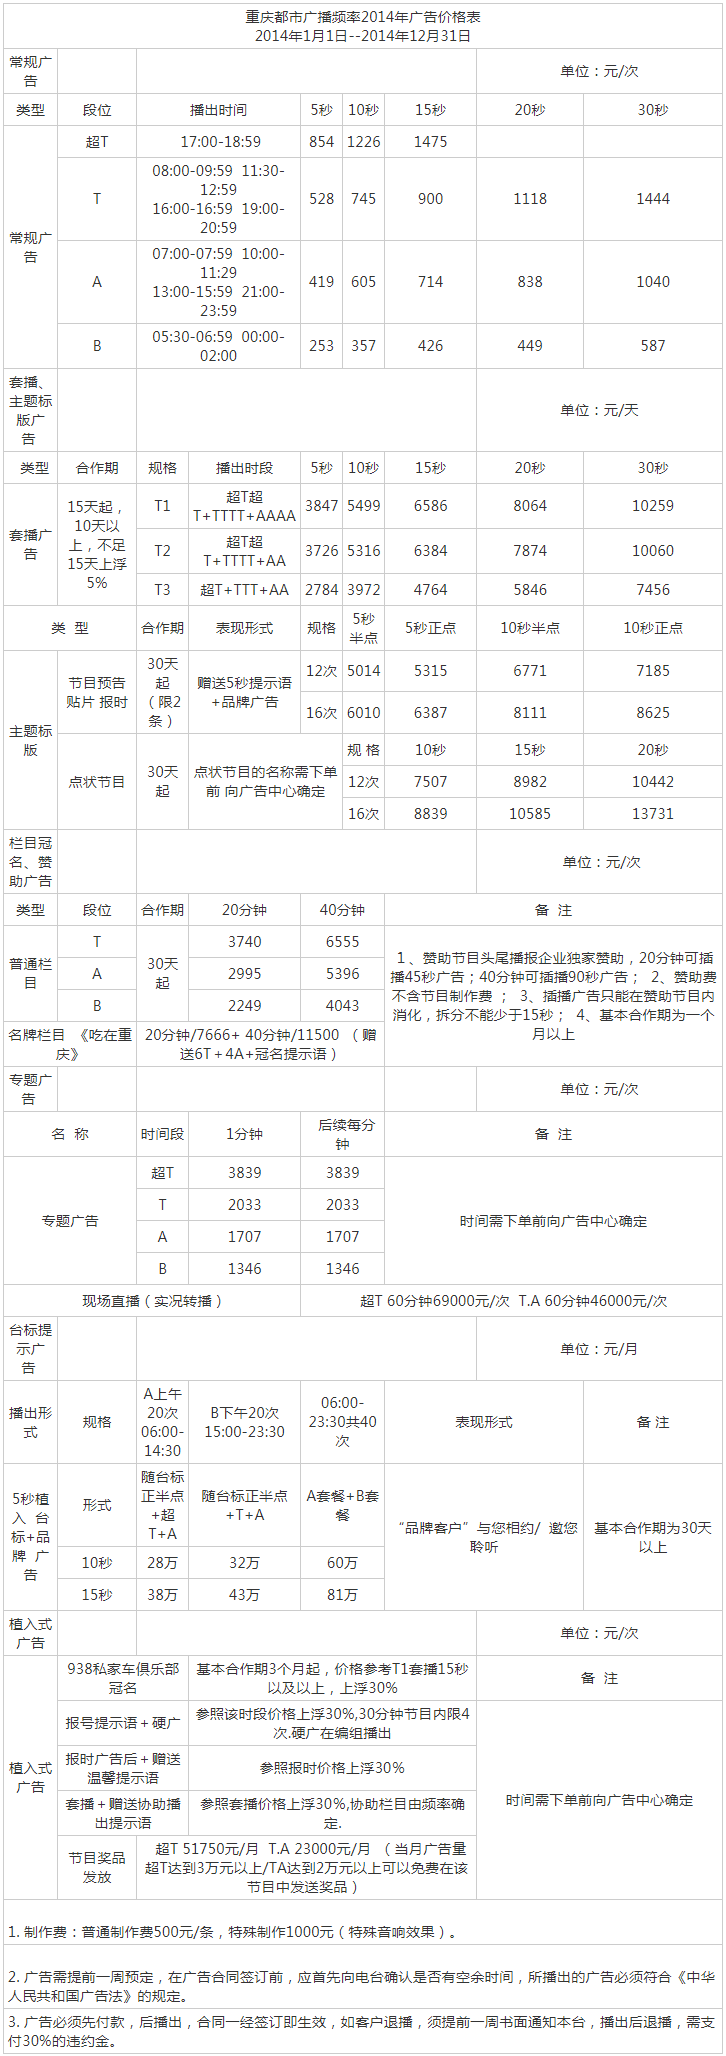 2014重庆人民广播电台都市频率 FM93.8广告报价表.png